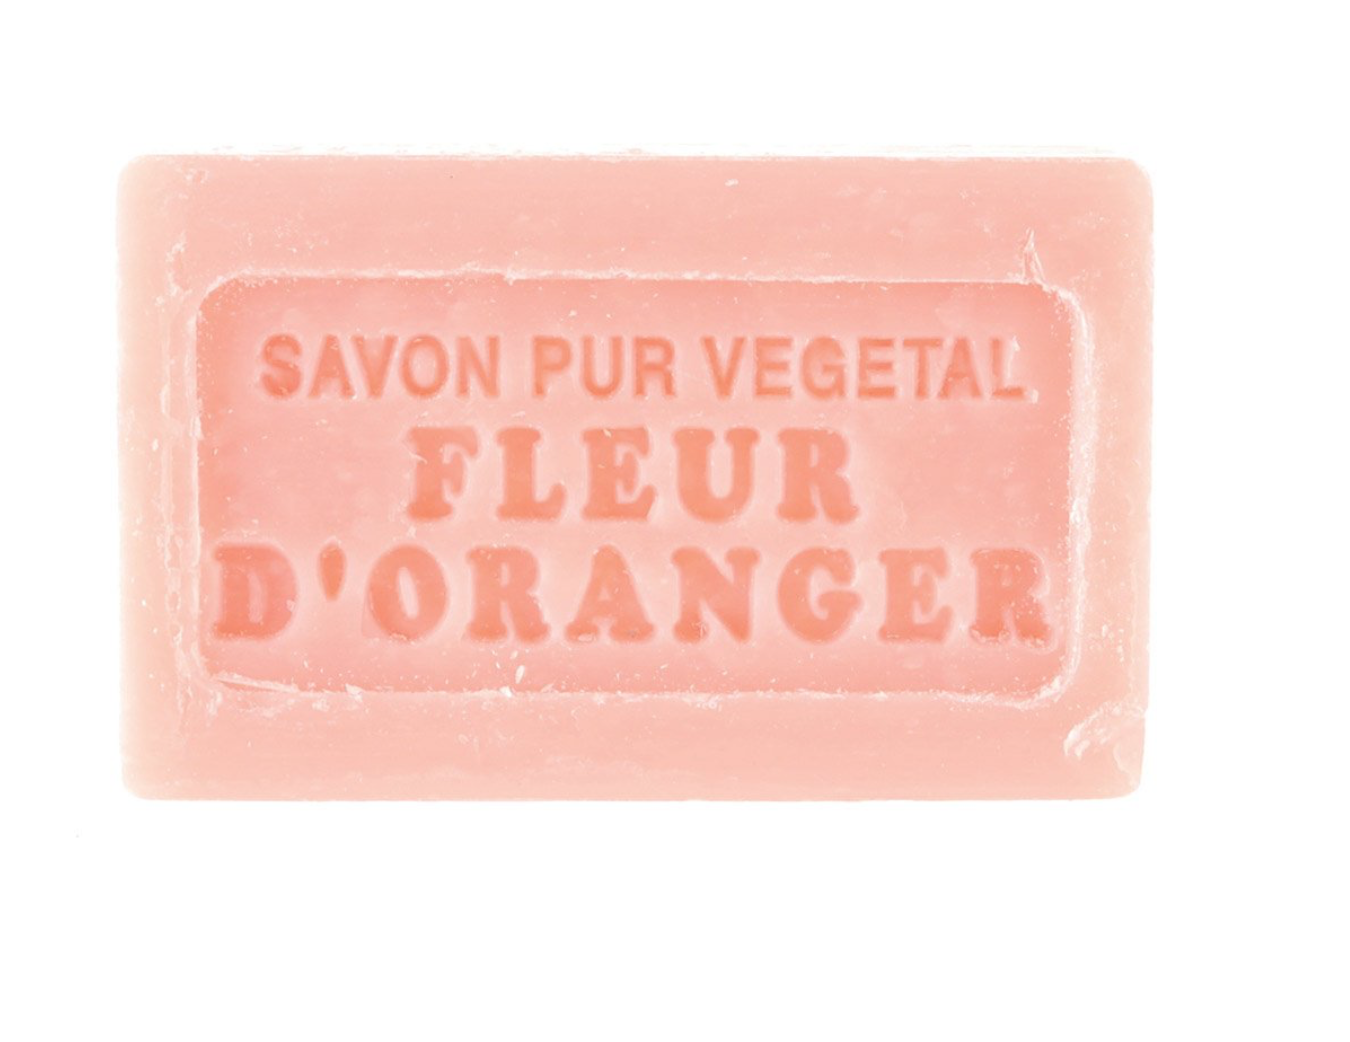 Savon De Marseille soap bar 125g